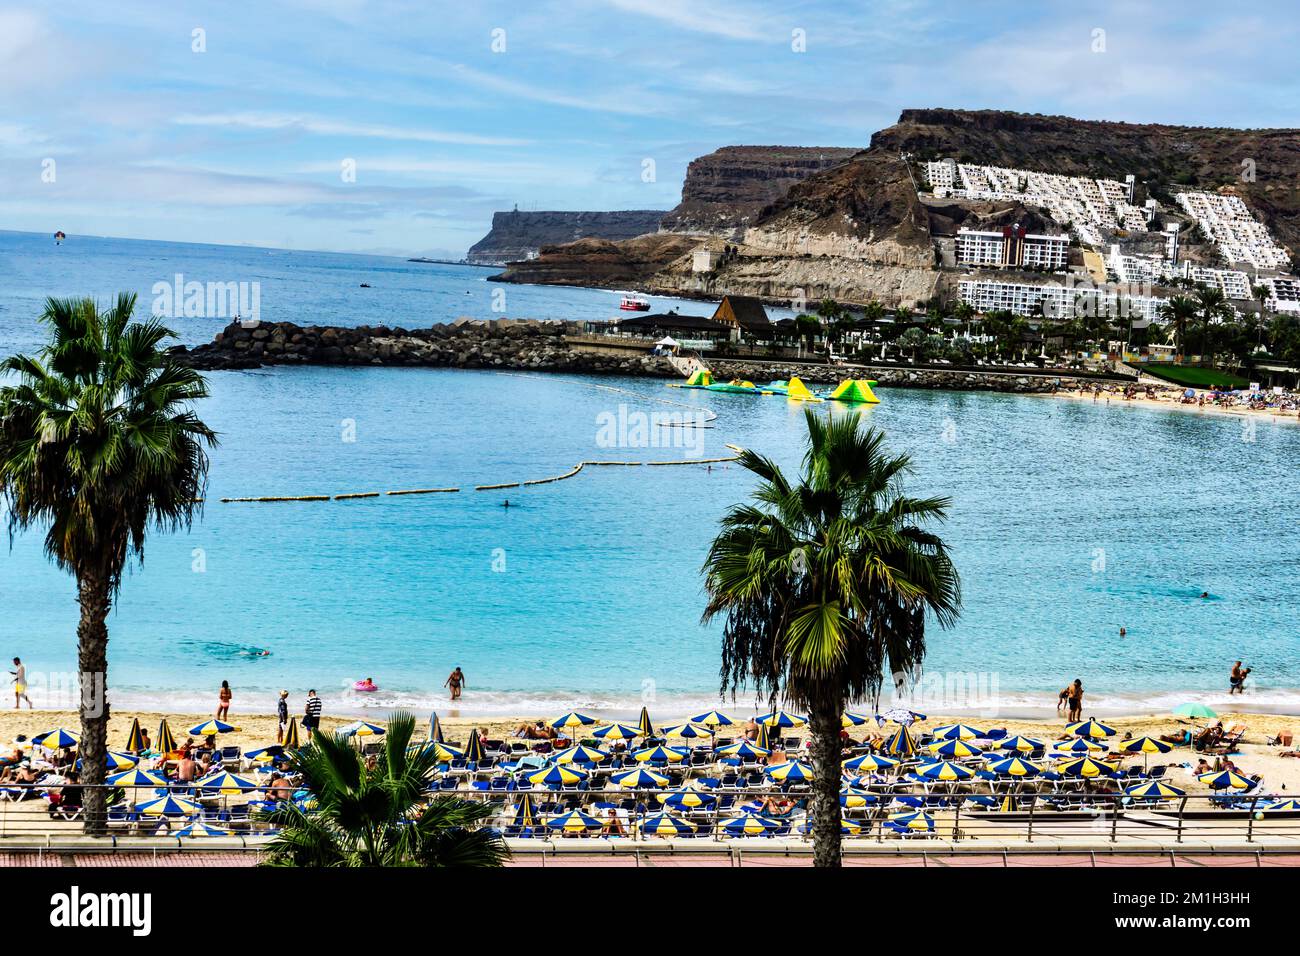 Der lebendige Strand und die atemberaubende Landschaft von Playa de Amadores auf Gran Canaria werden mit einem Farbtupfer zum Leben erweckt. Stockfoto